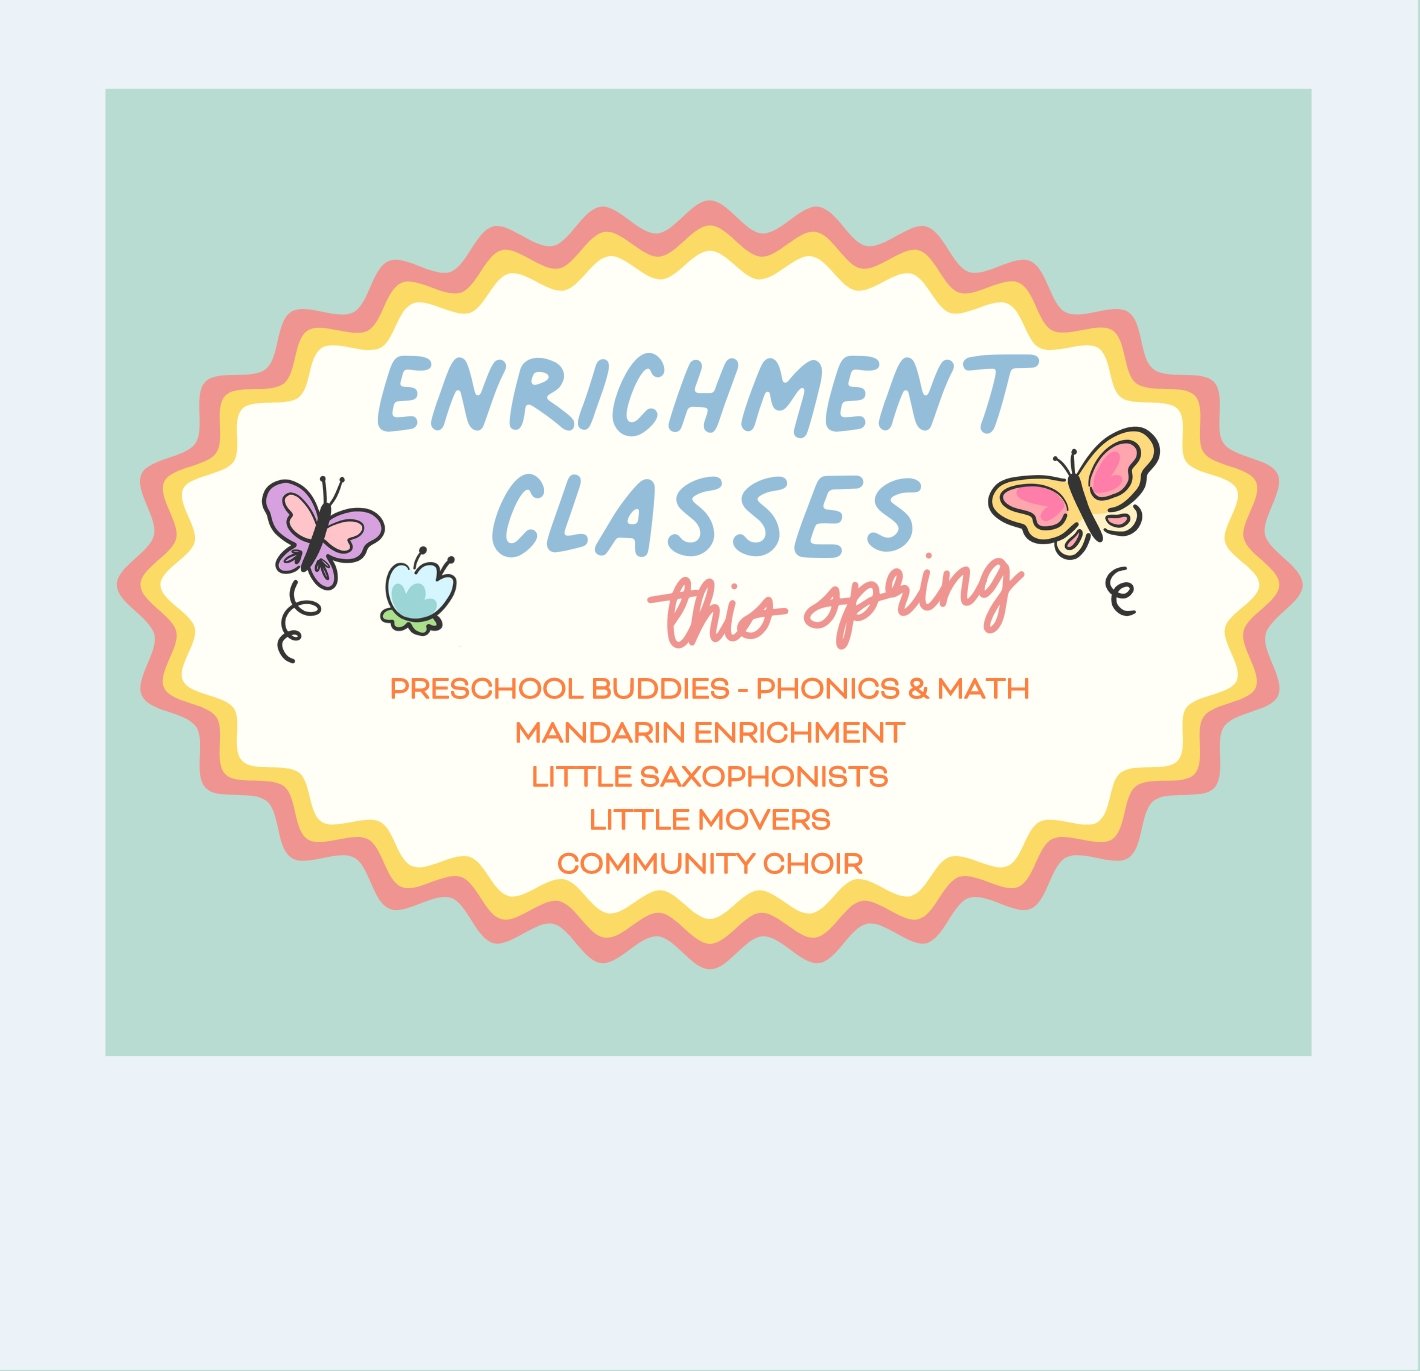  enrichment classes now open for enrollment! 